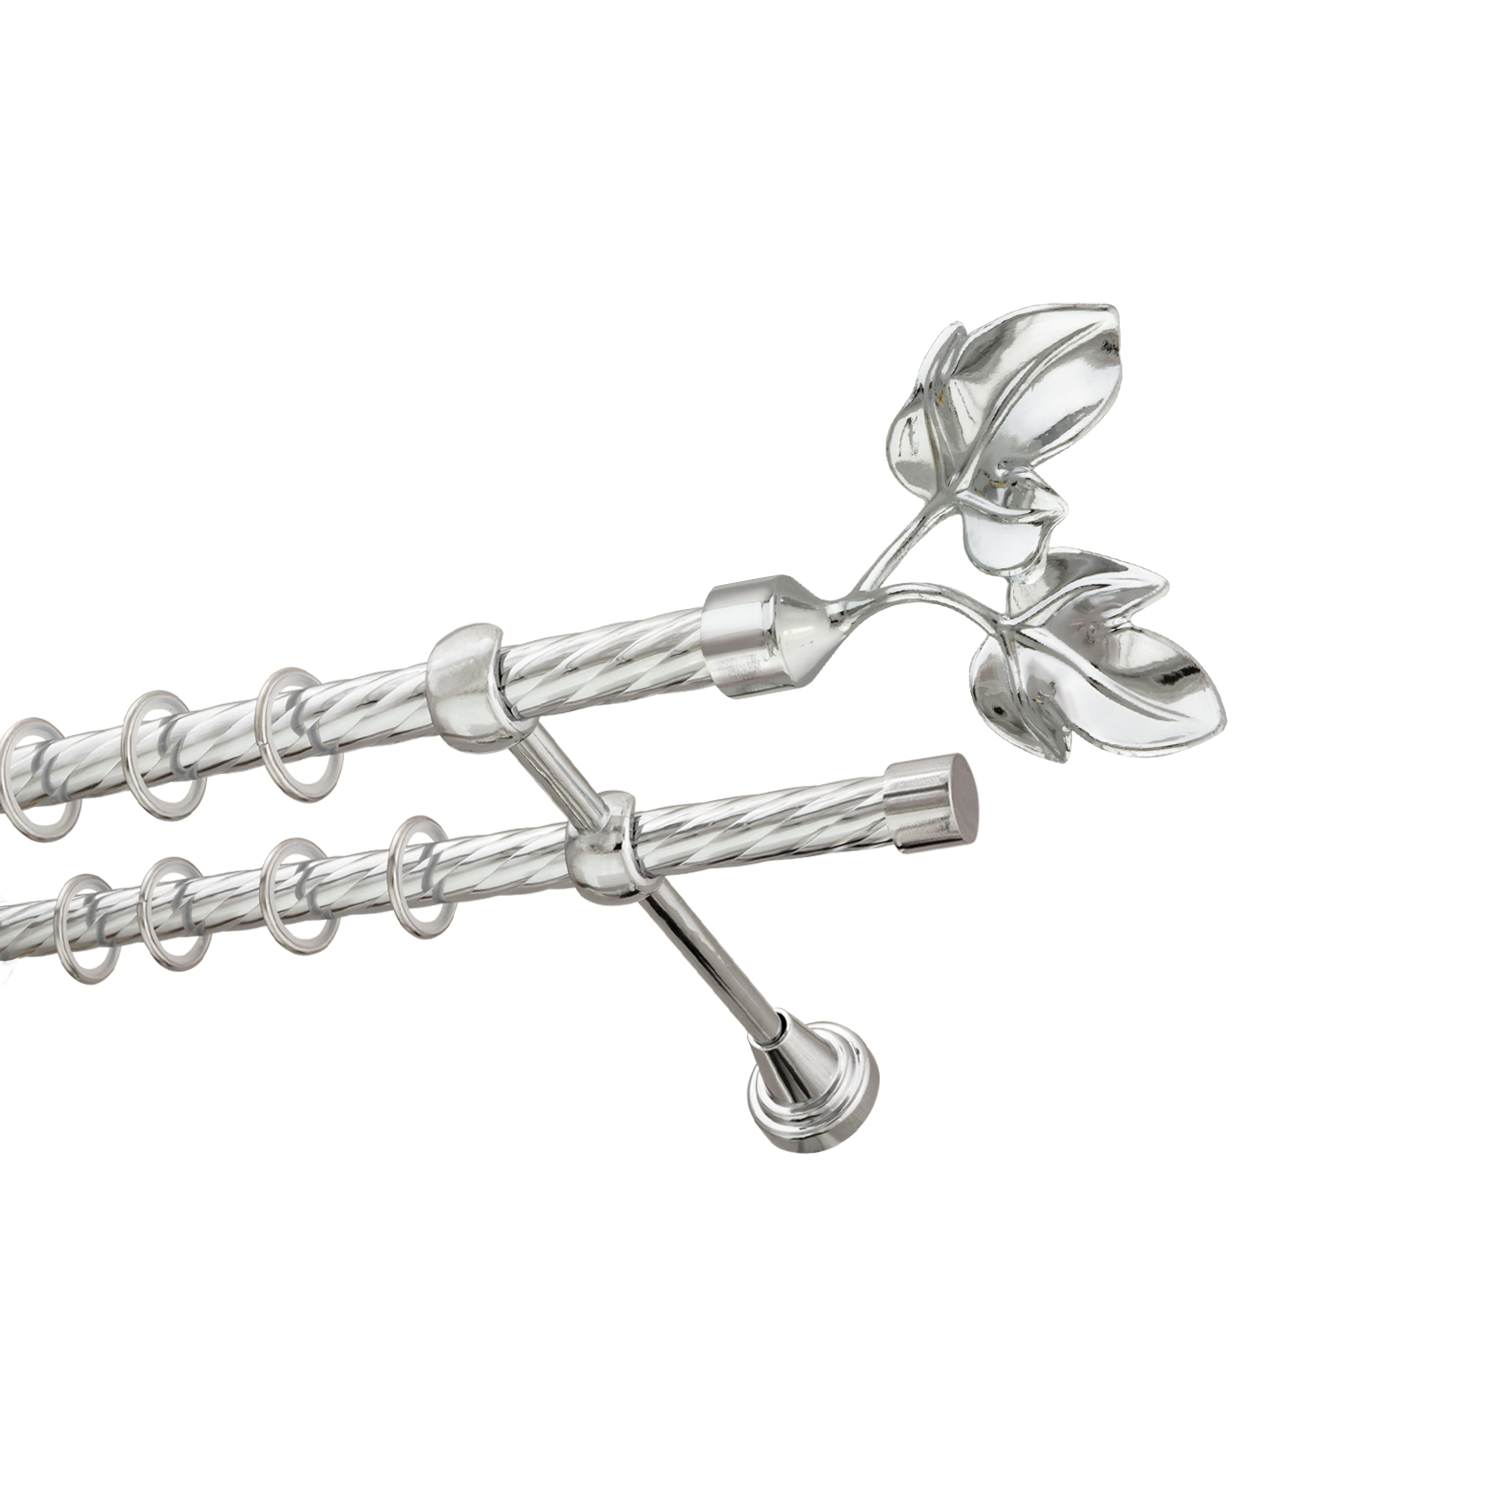 Металлический карниз для штор Листья, двухрядный 16/16 мм, серебро, витая штанга, длина 240 см - фото Wikidecor.ru